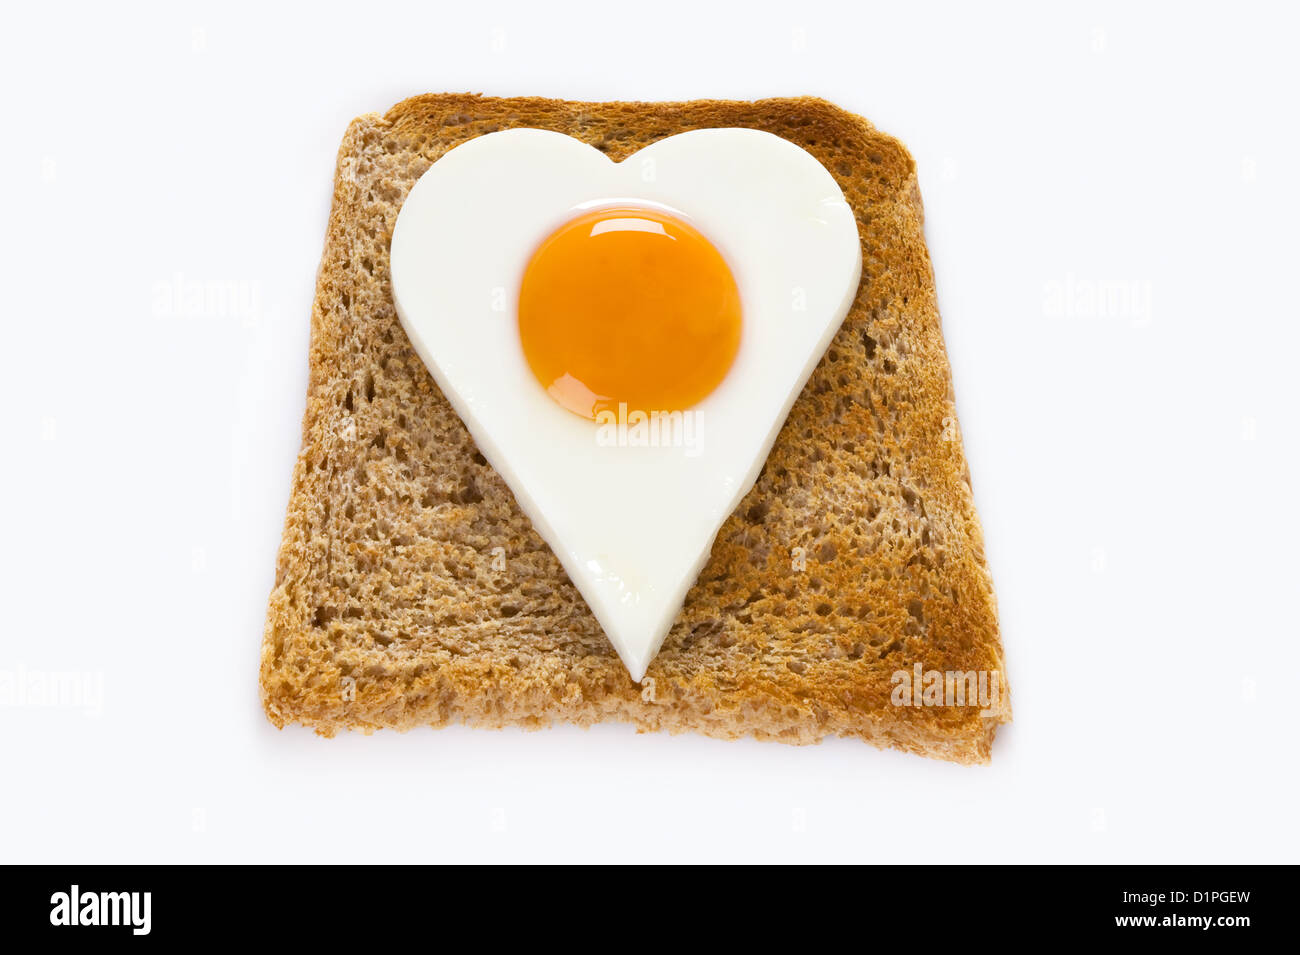 gekochtes Ei auf eine Scheibe Toast liebe Essen oder gesunde Ernährung Cholesterin Konzept veranschaulichen in Herzform Stockfoto